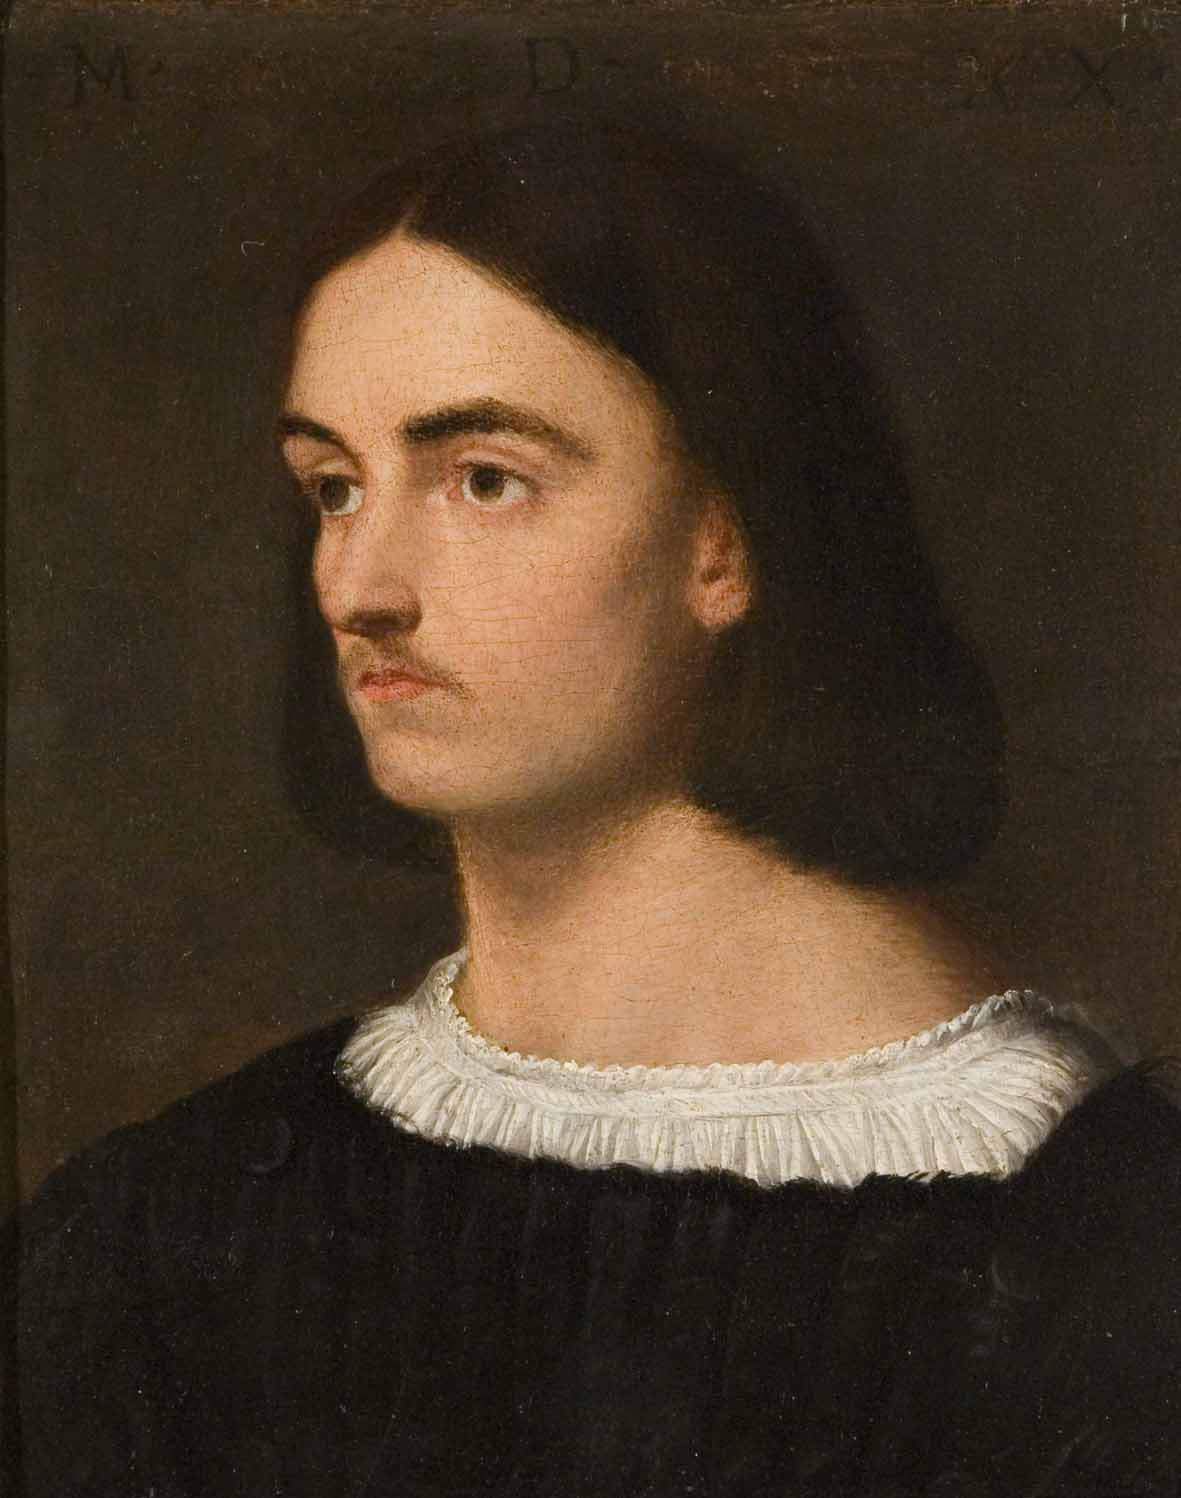 Le portrait incertain qui sera exposé à partir du mois d'octobre à Castelfranco pourrait bien être de Giorgione